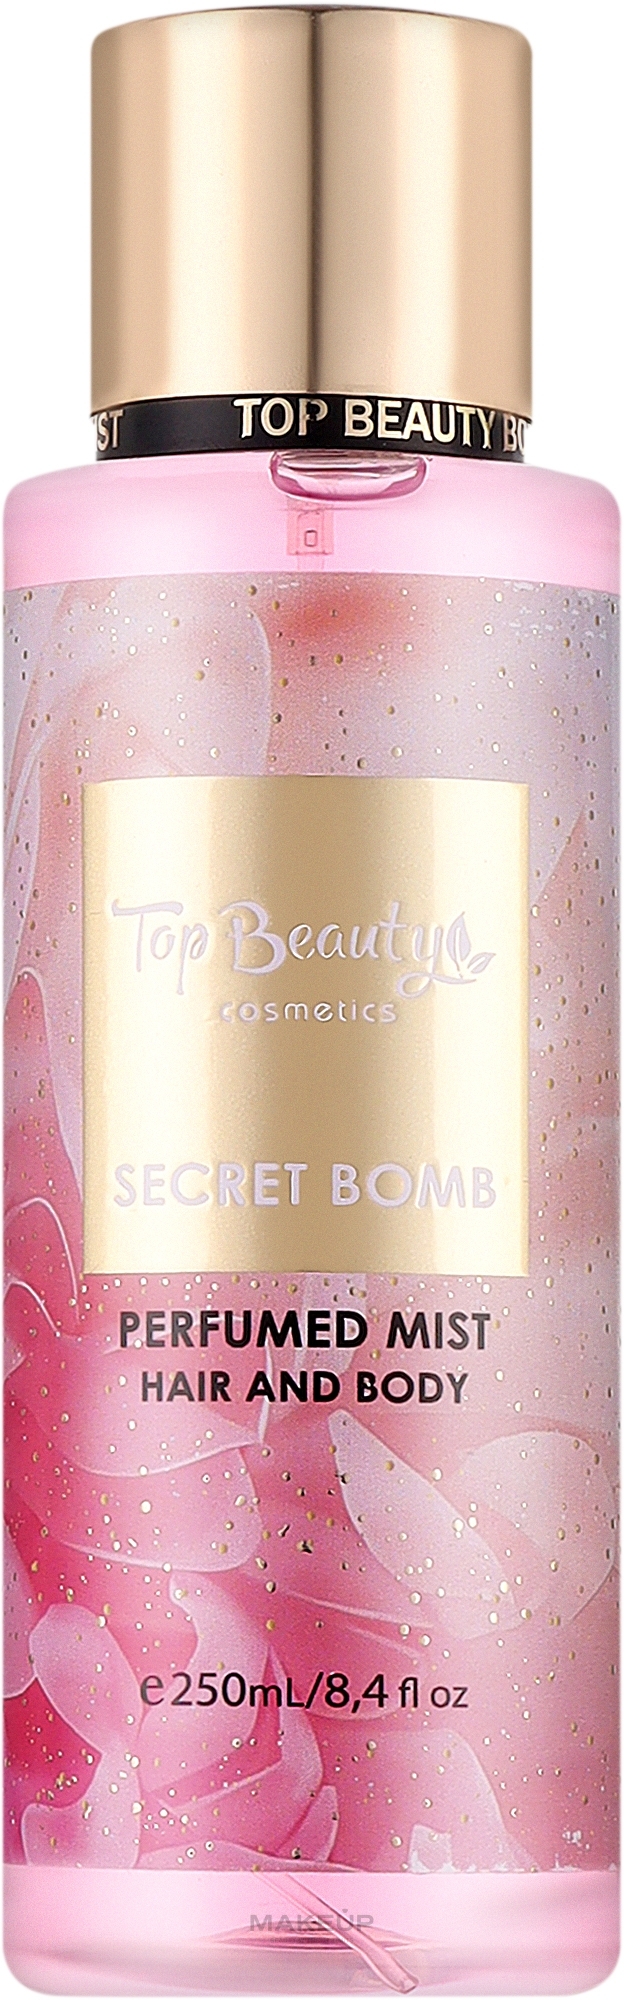 Міст для тіла й волосся "Secret Bomb" - Top Beauty Body and Hair Mist — фото 250ml